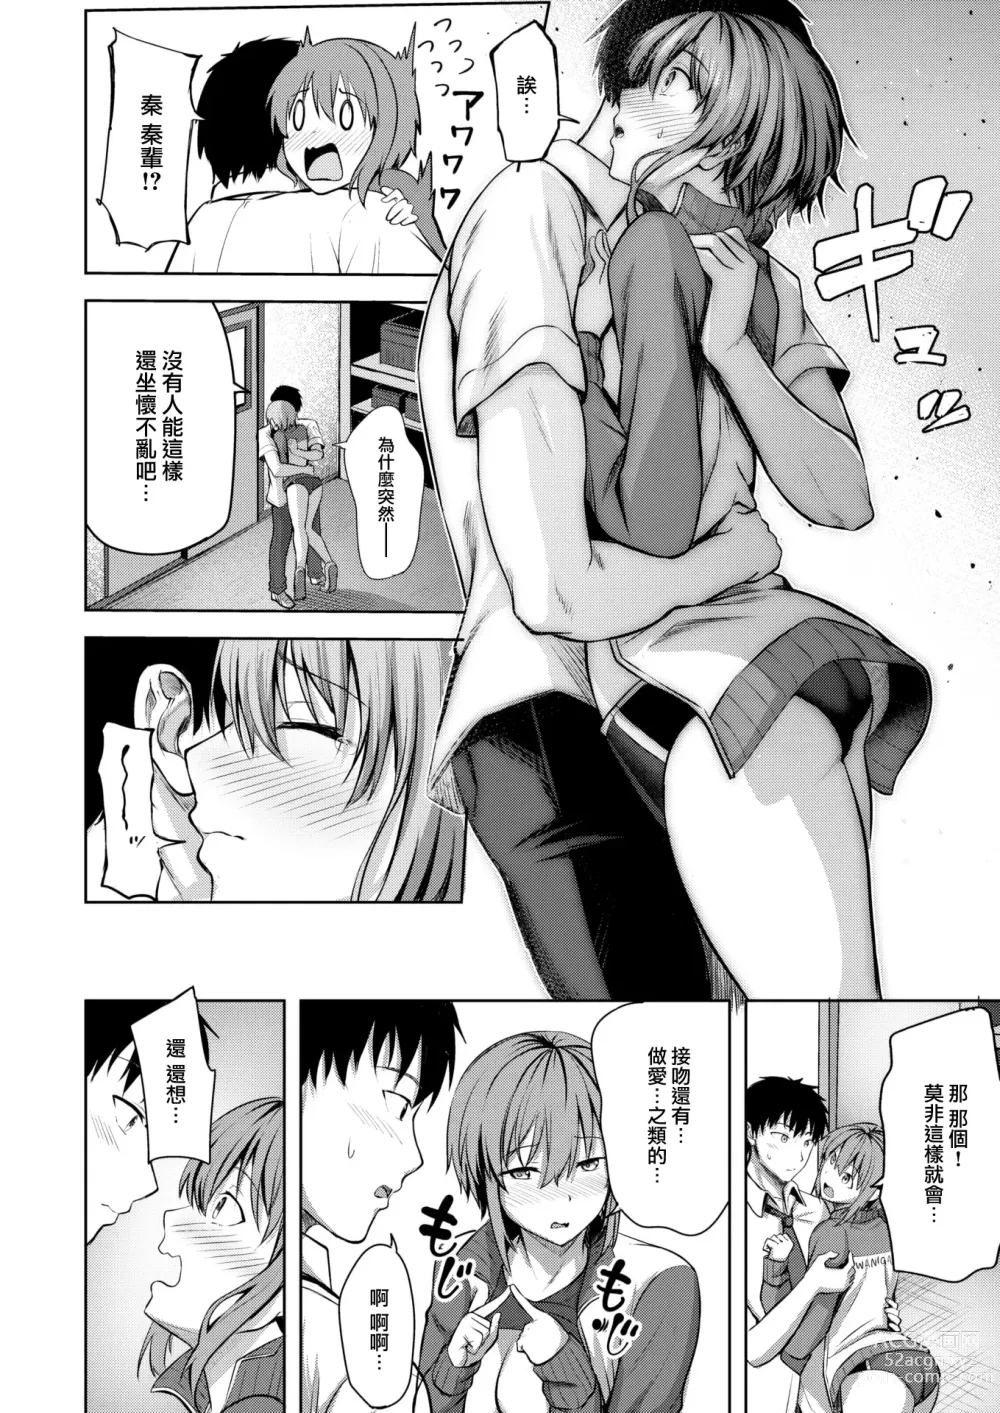 Page 11 of manga Start line